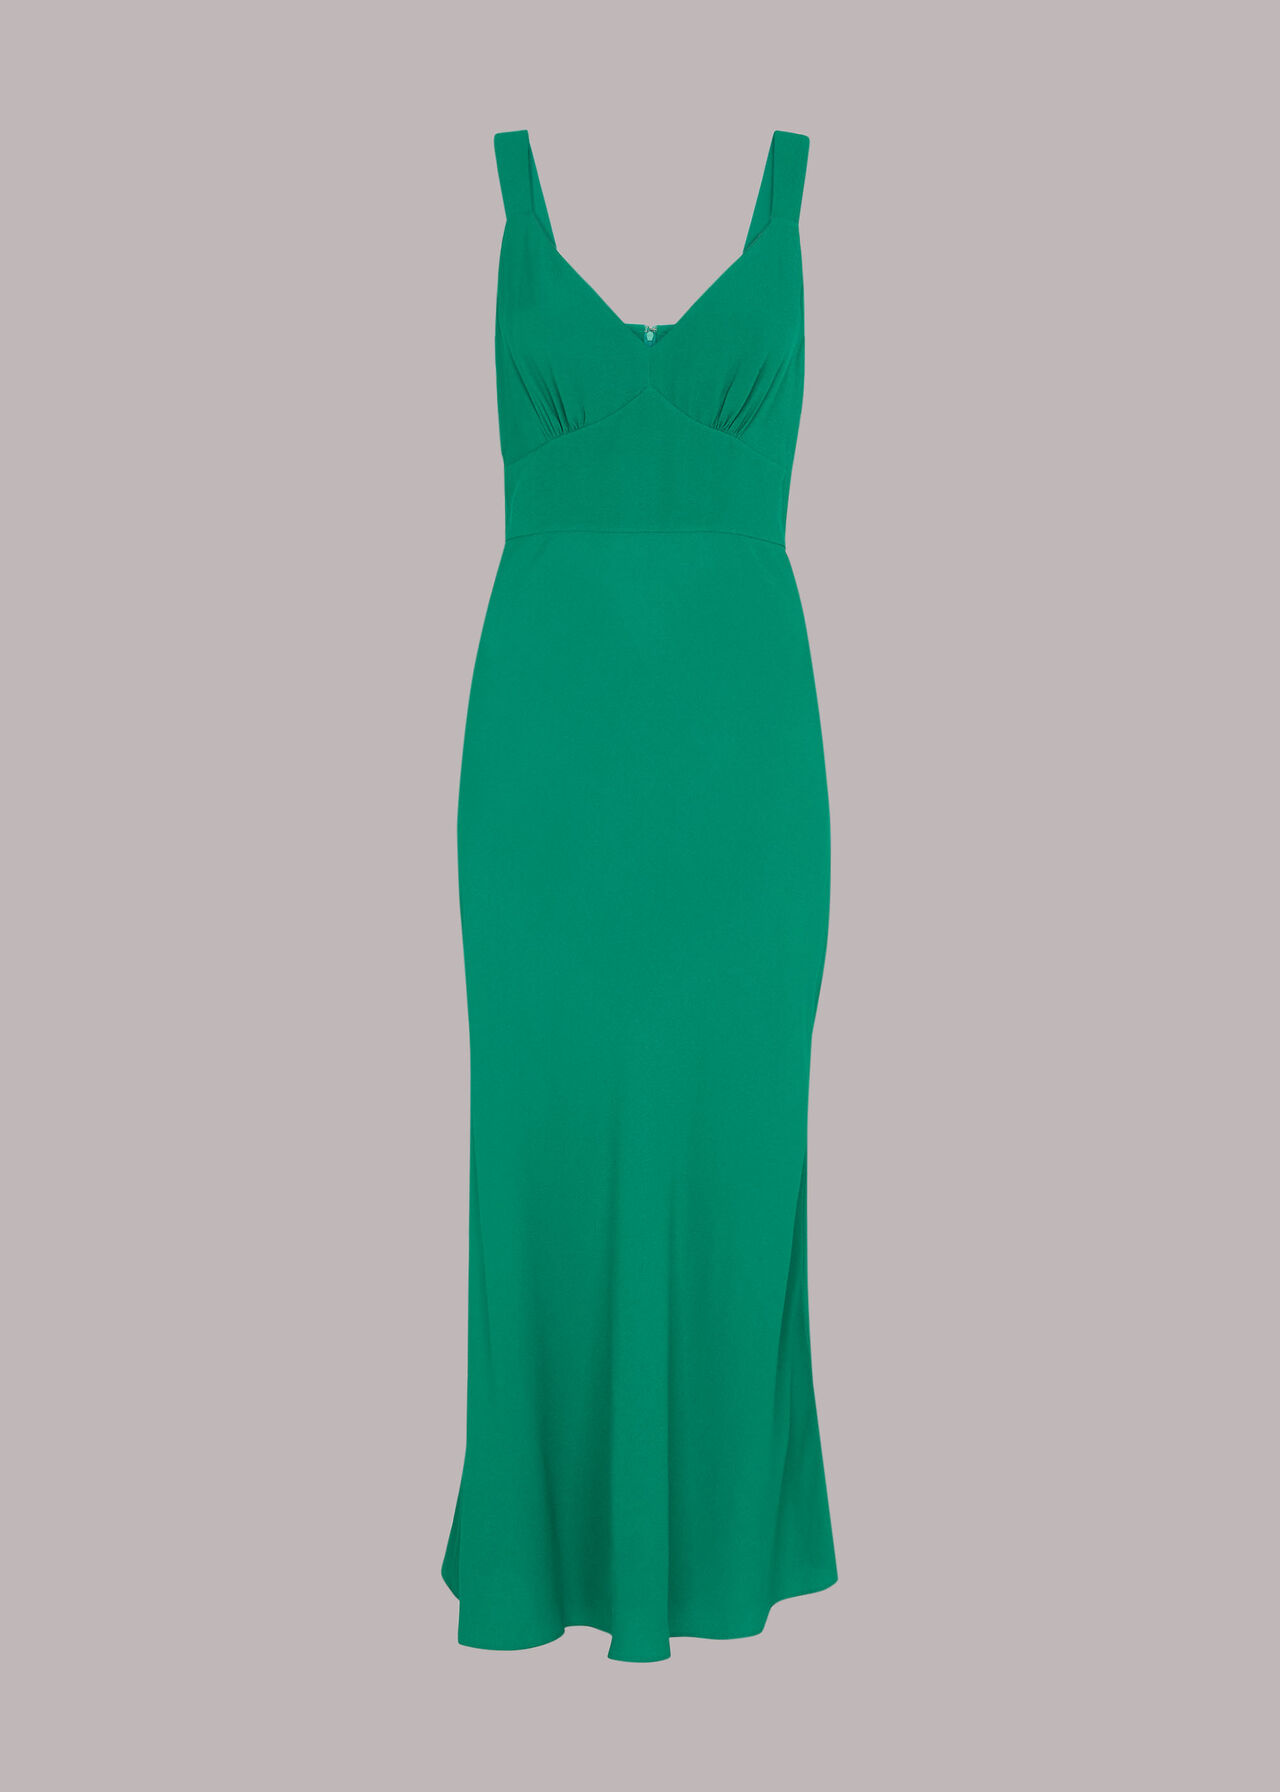 Rachael Sleeveless Dress Green